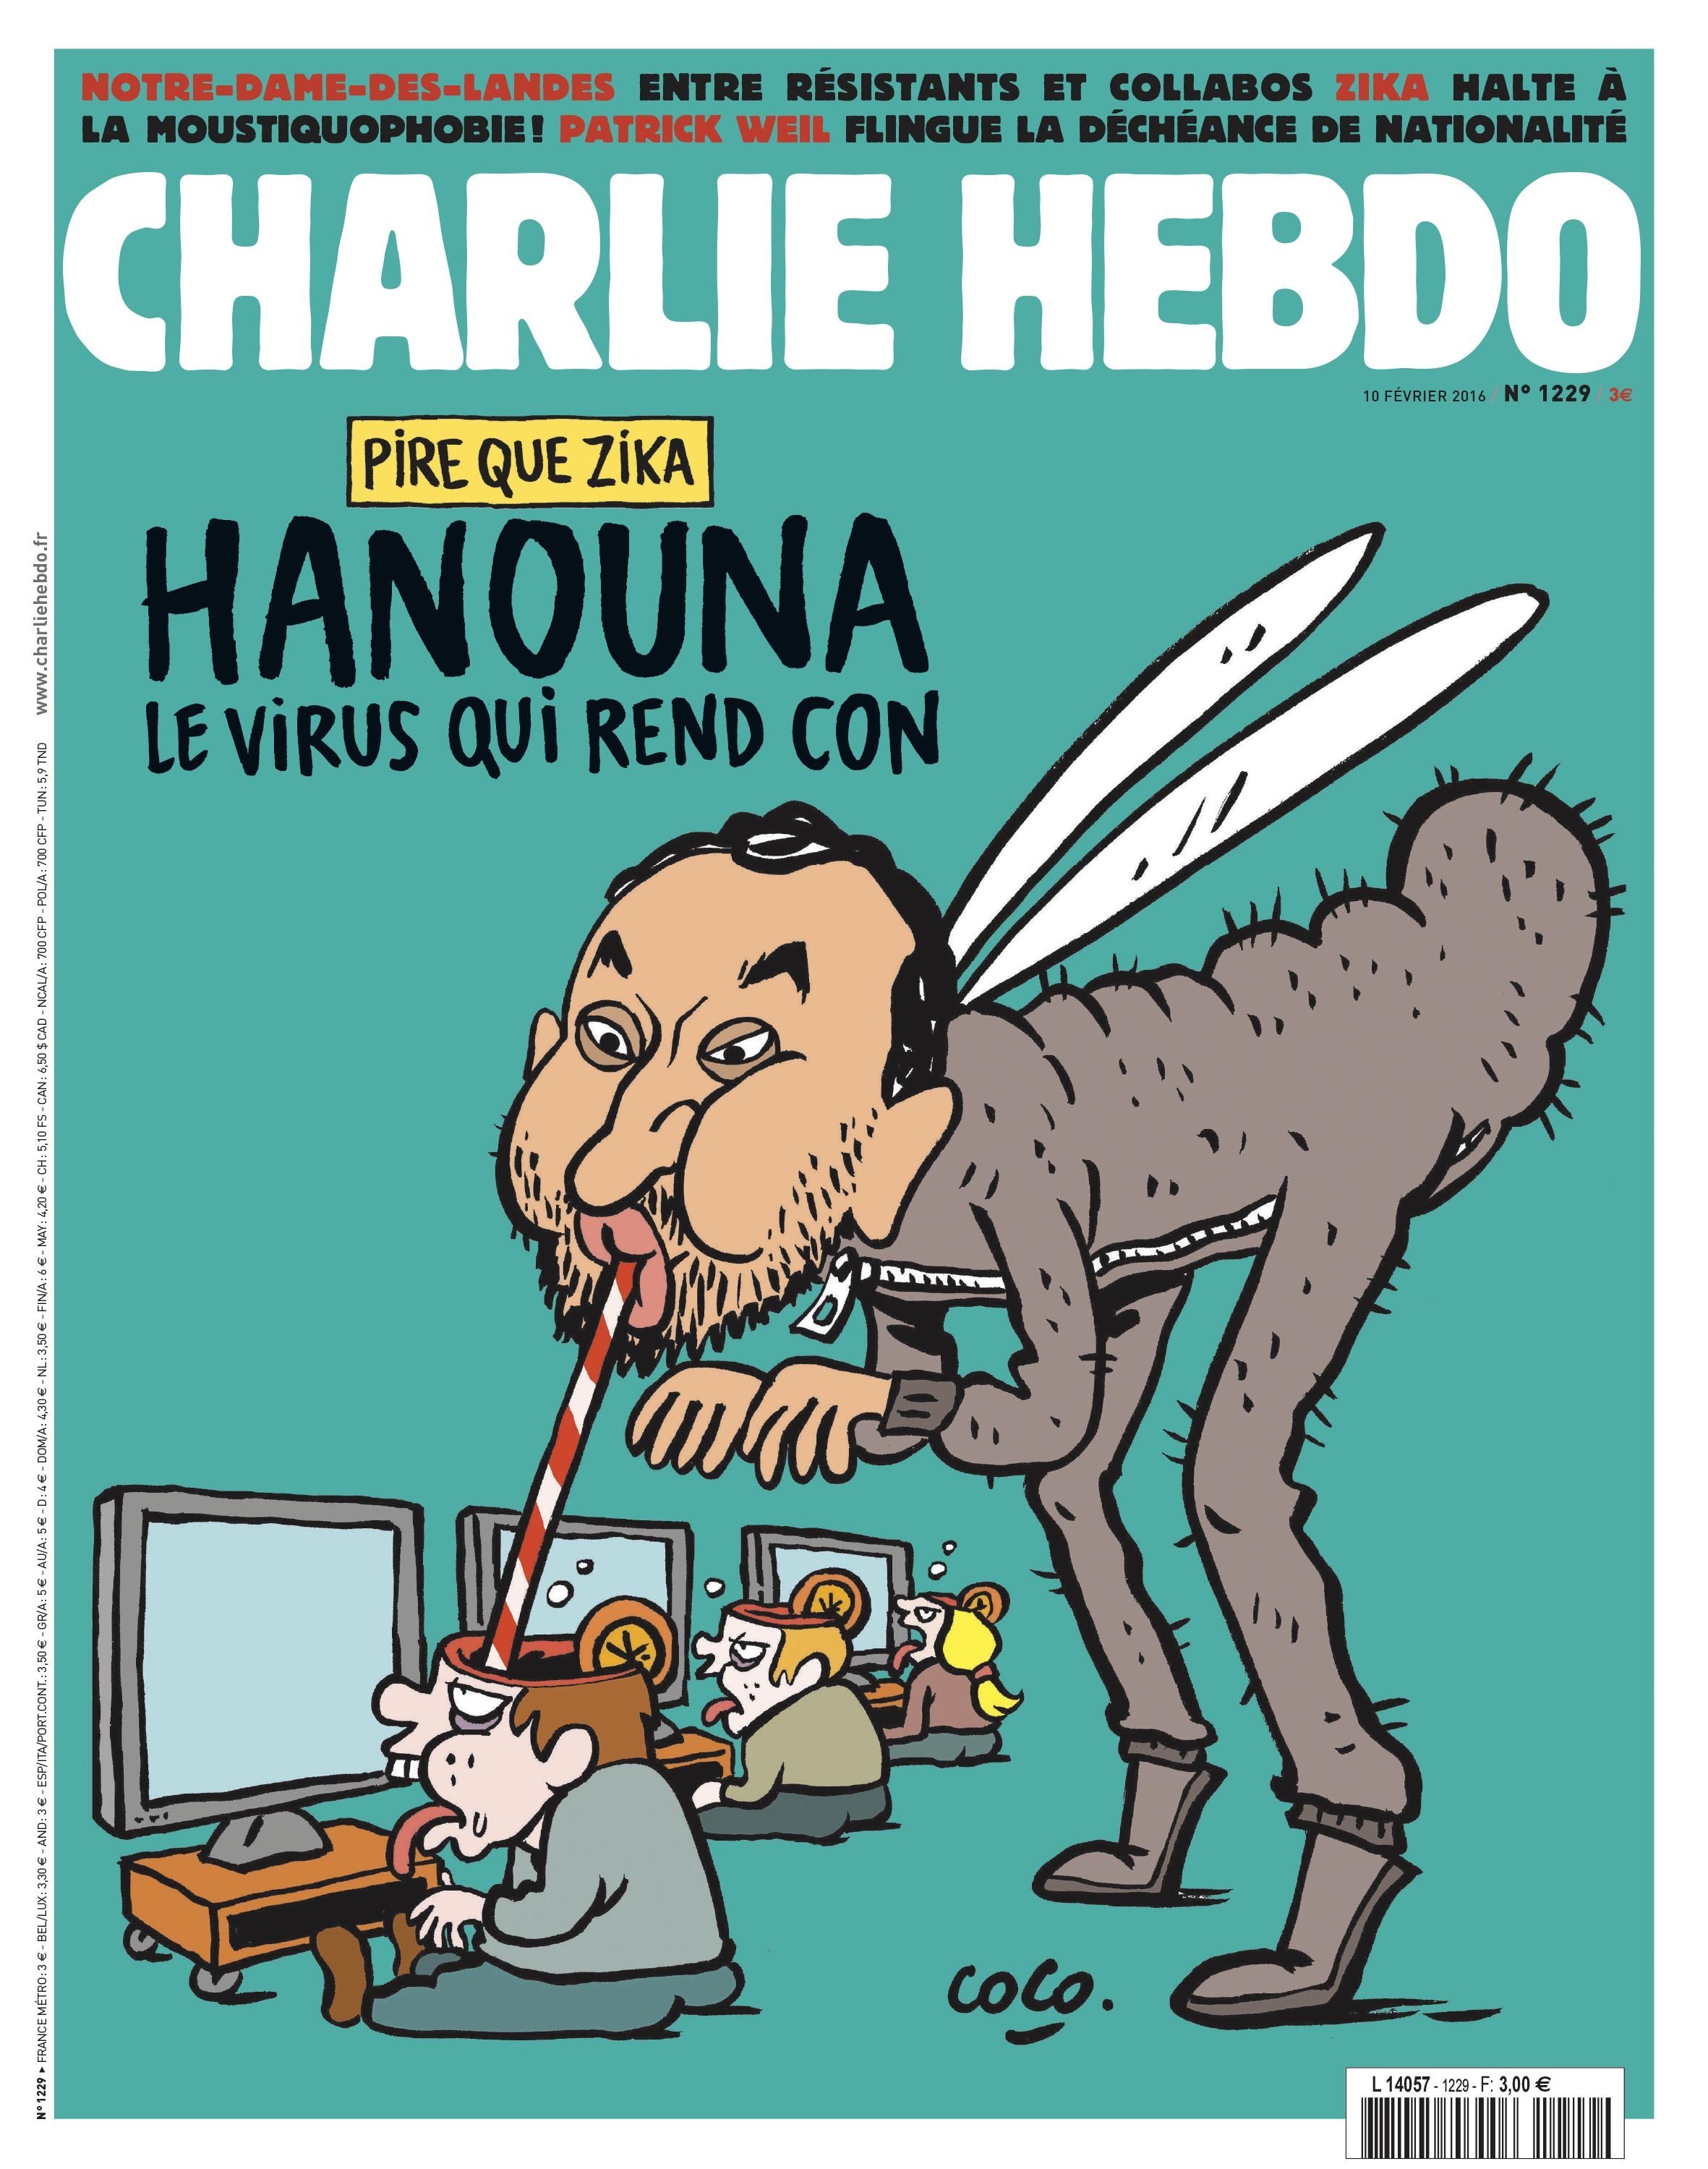 La Une De Charlie Hebdo Aujourd Hui Sur Le Forum Blabla 18 25 Ans 10 02 2016 07 04 20